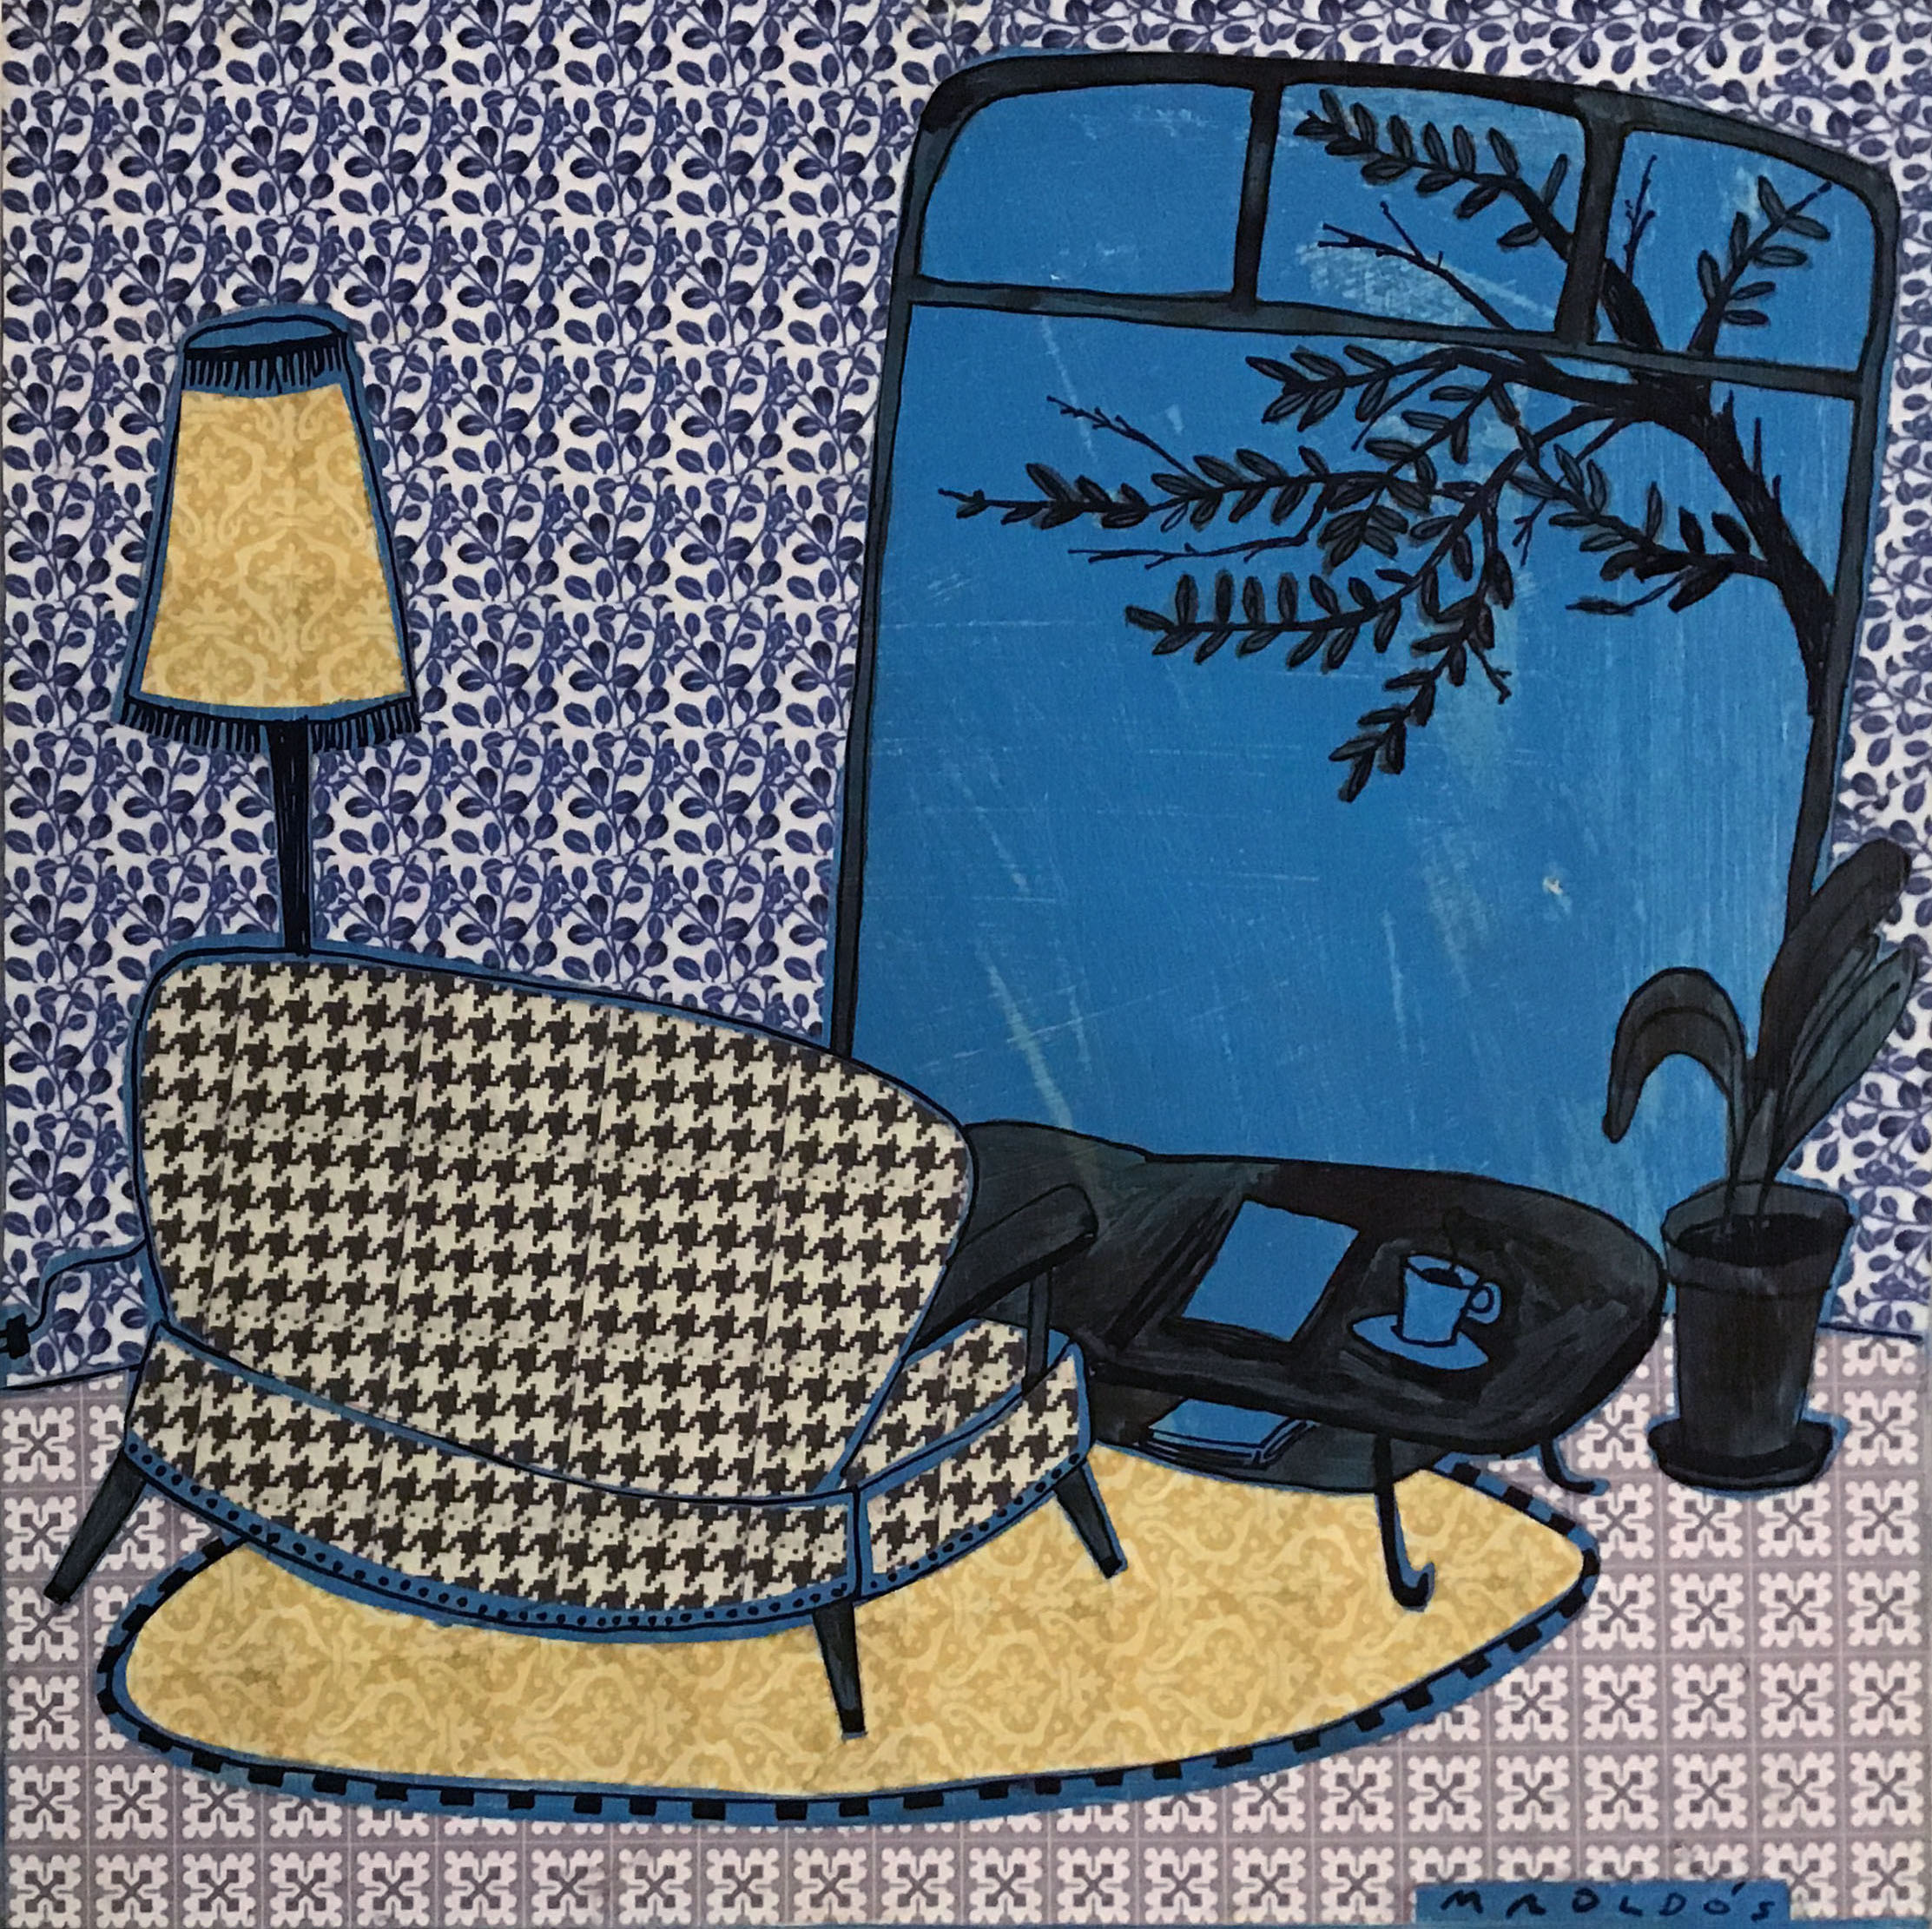 Finestral blau- Blue window- Montse Roldós